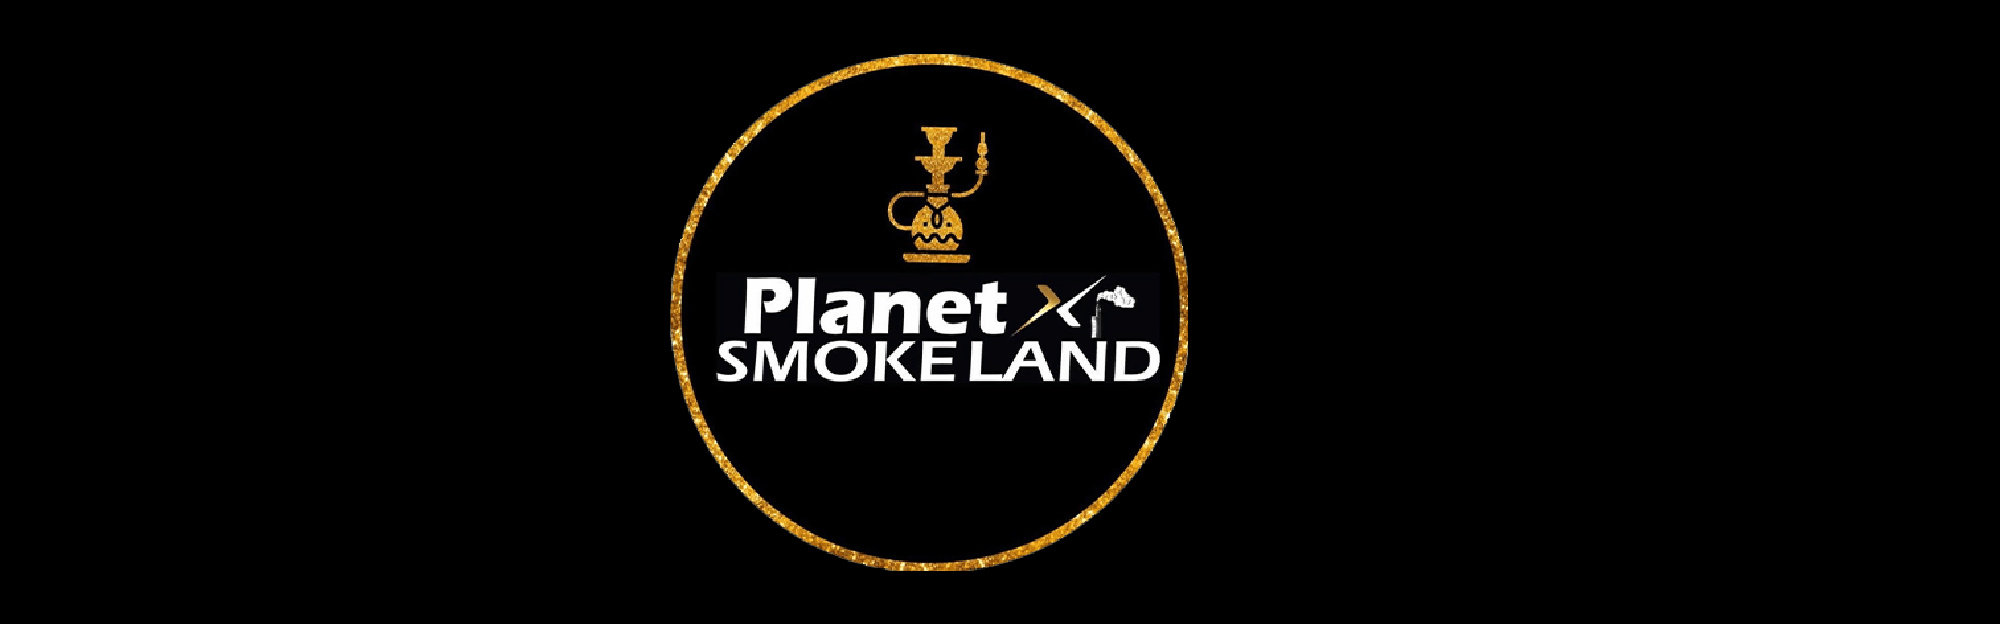 image of planet x smoke land in amarillo tx